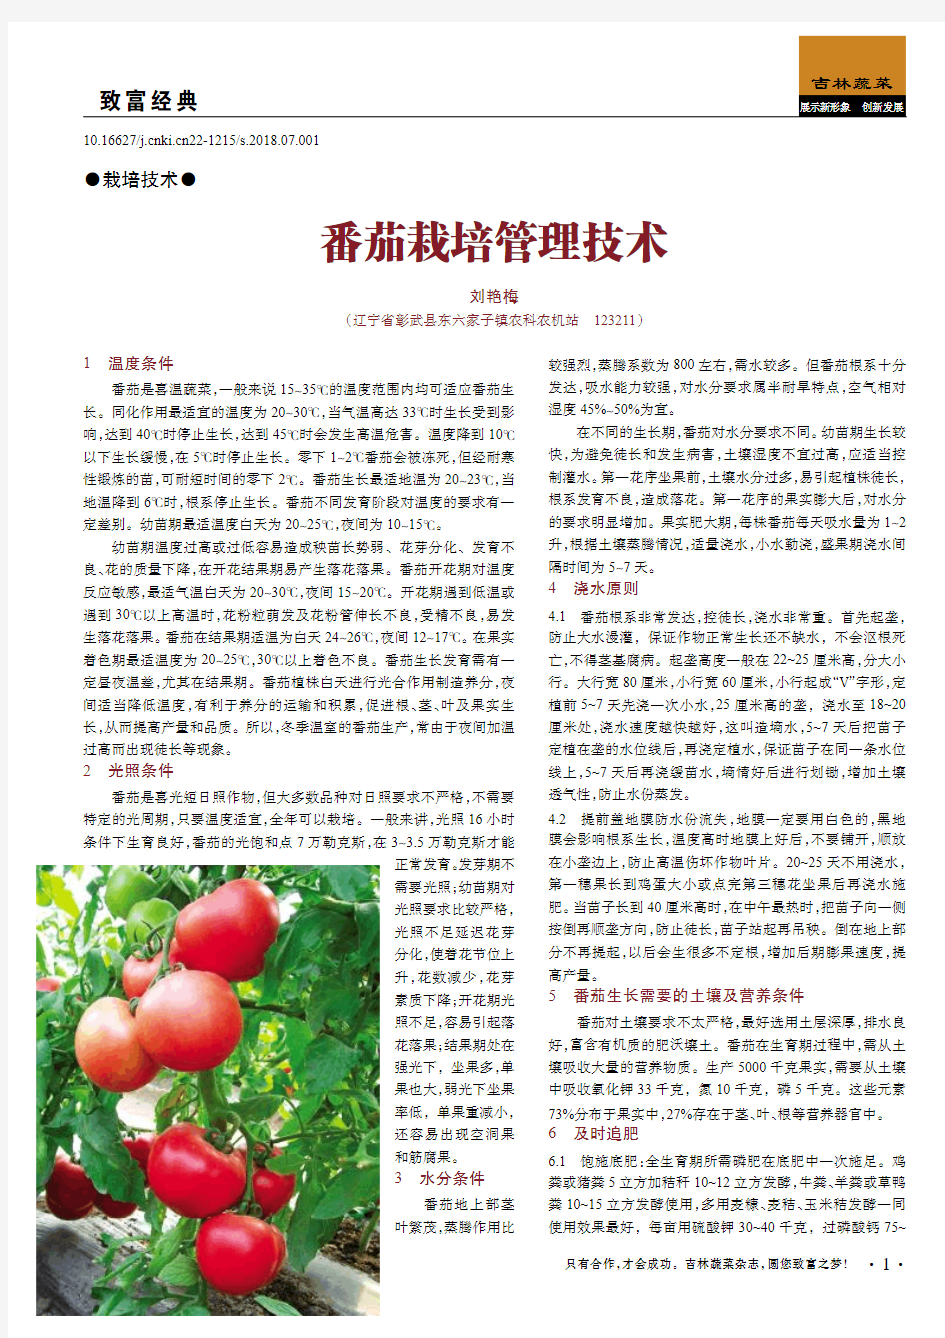 番茄栽培管理技术